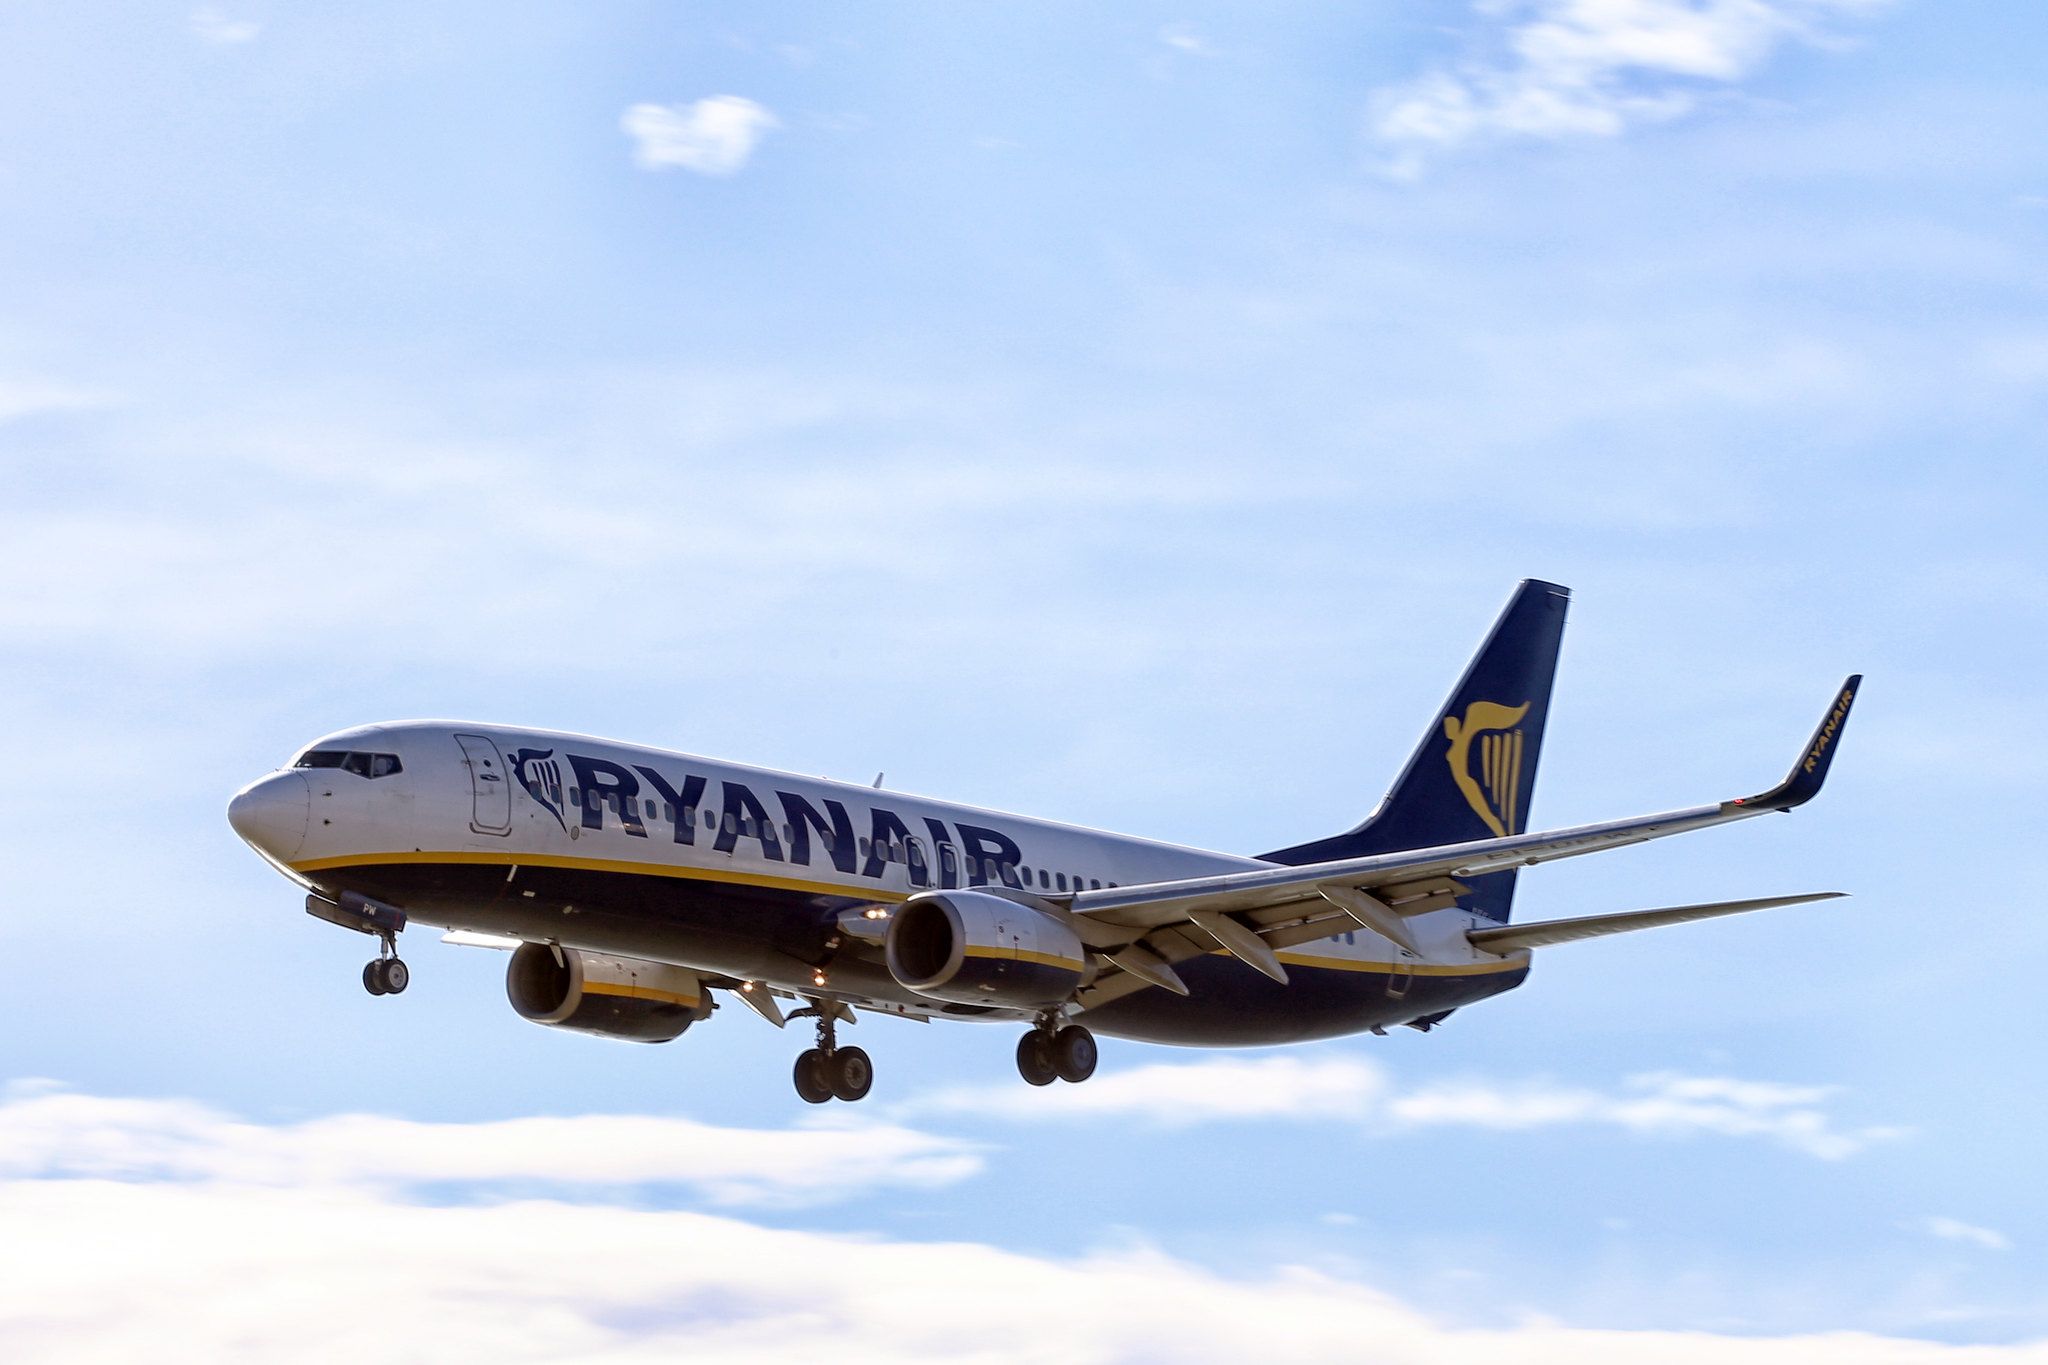 Диспетчери повідомили про «мінування» літака Ryanair на 24 хвилини раніше, ніж отримали лист – ЗМІ